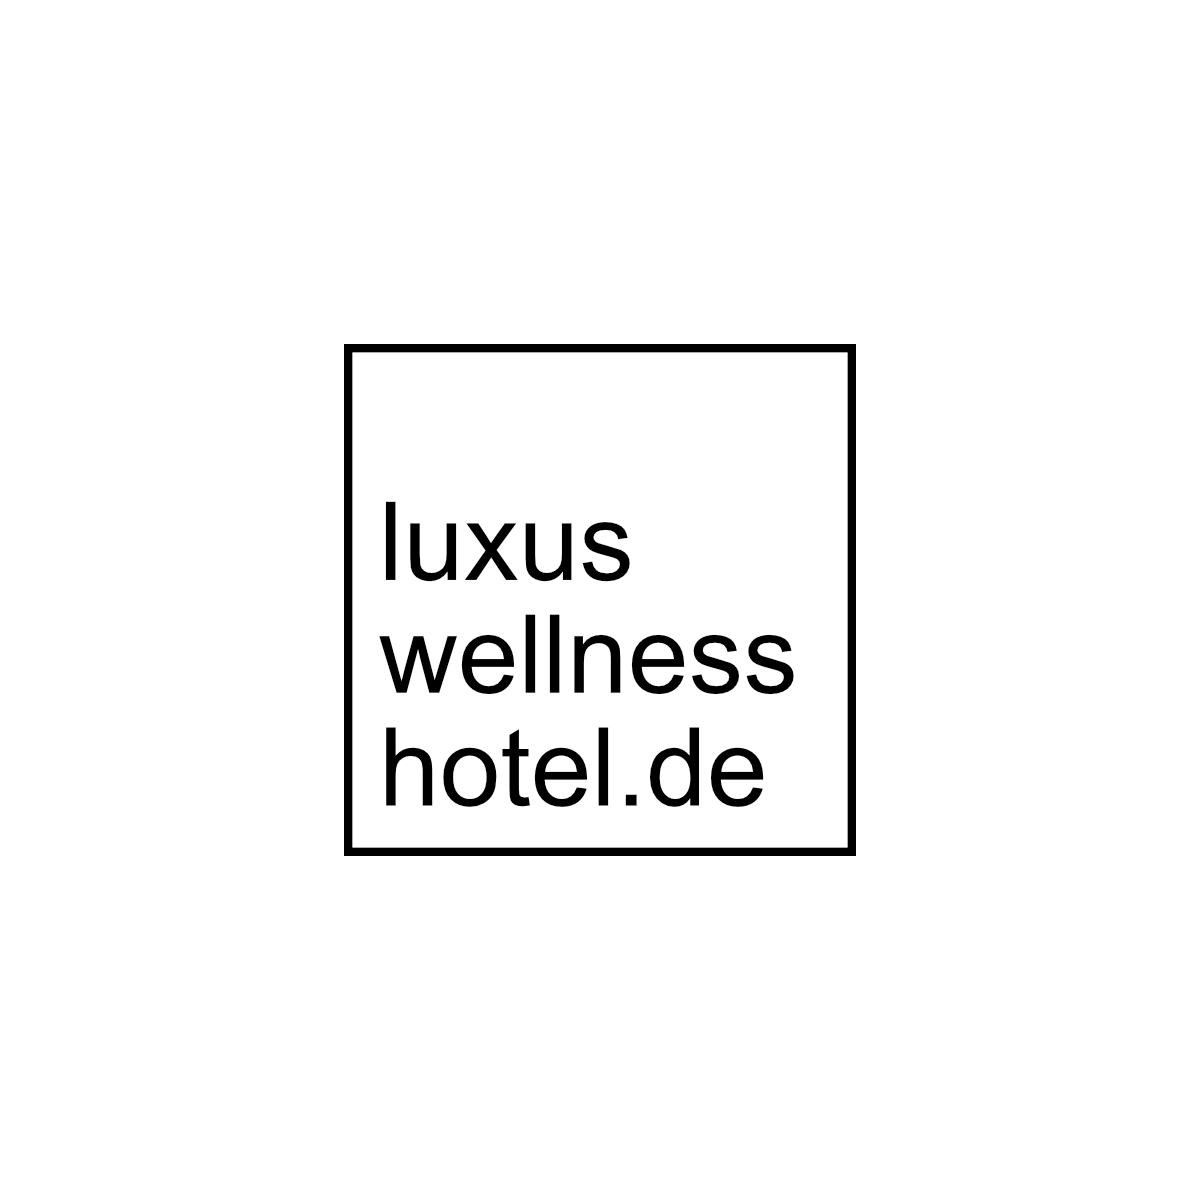 (c) Luxus-wellness-hotel.de